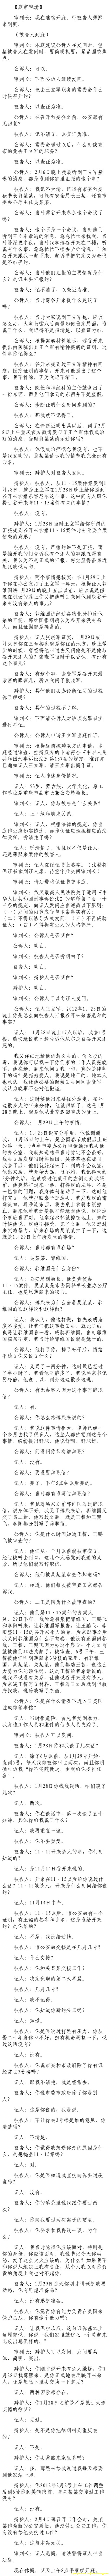 济南市中级法院官方微博公布的8月24日庭审现场记录（8）